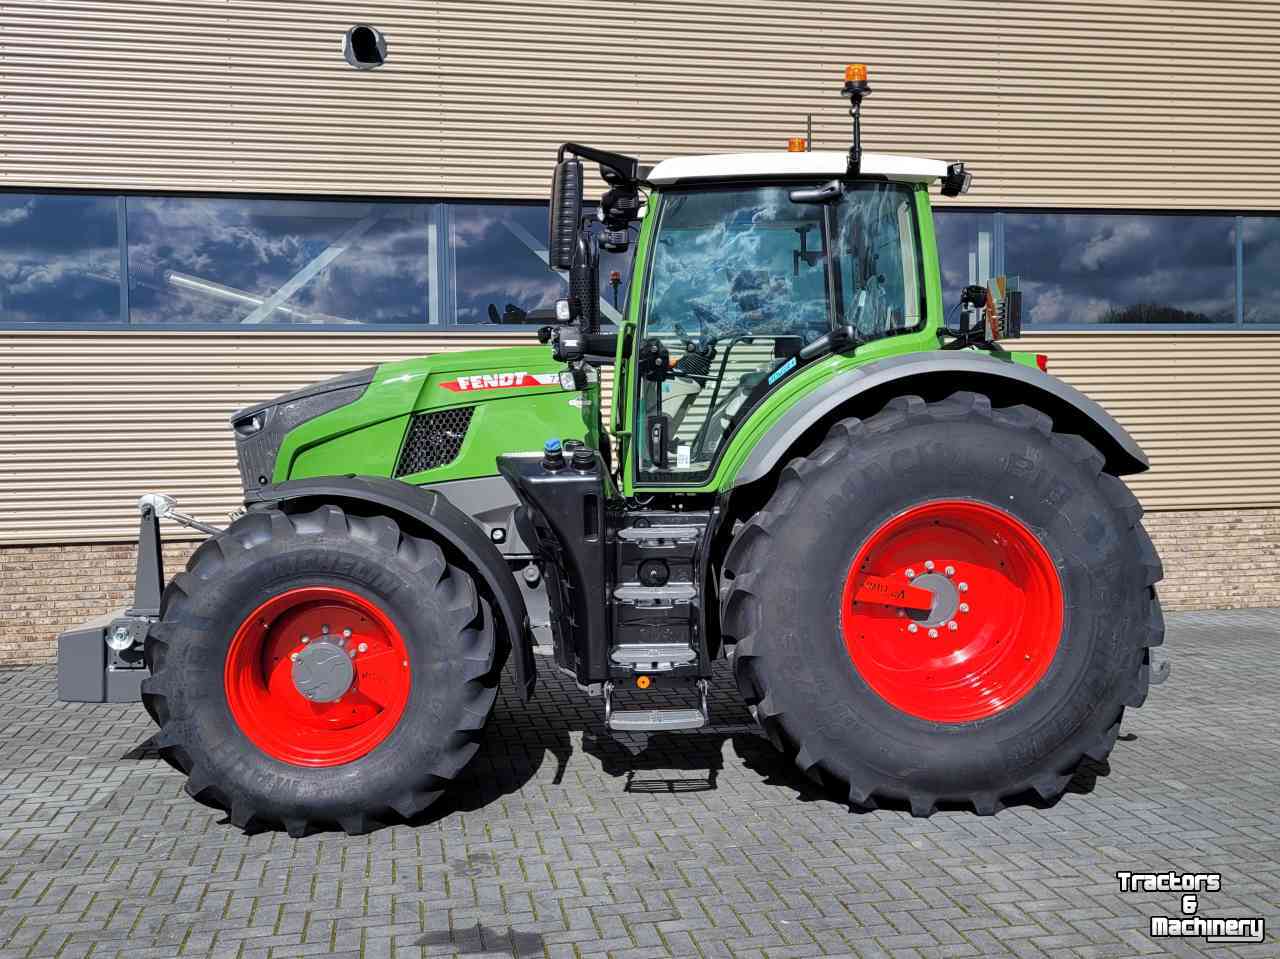 Tractors Fendt 720 vario gen7 gps/rtk 722/724/728